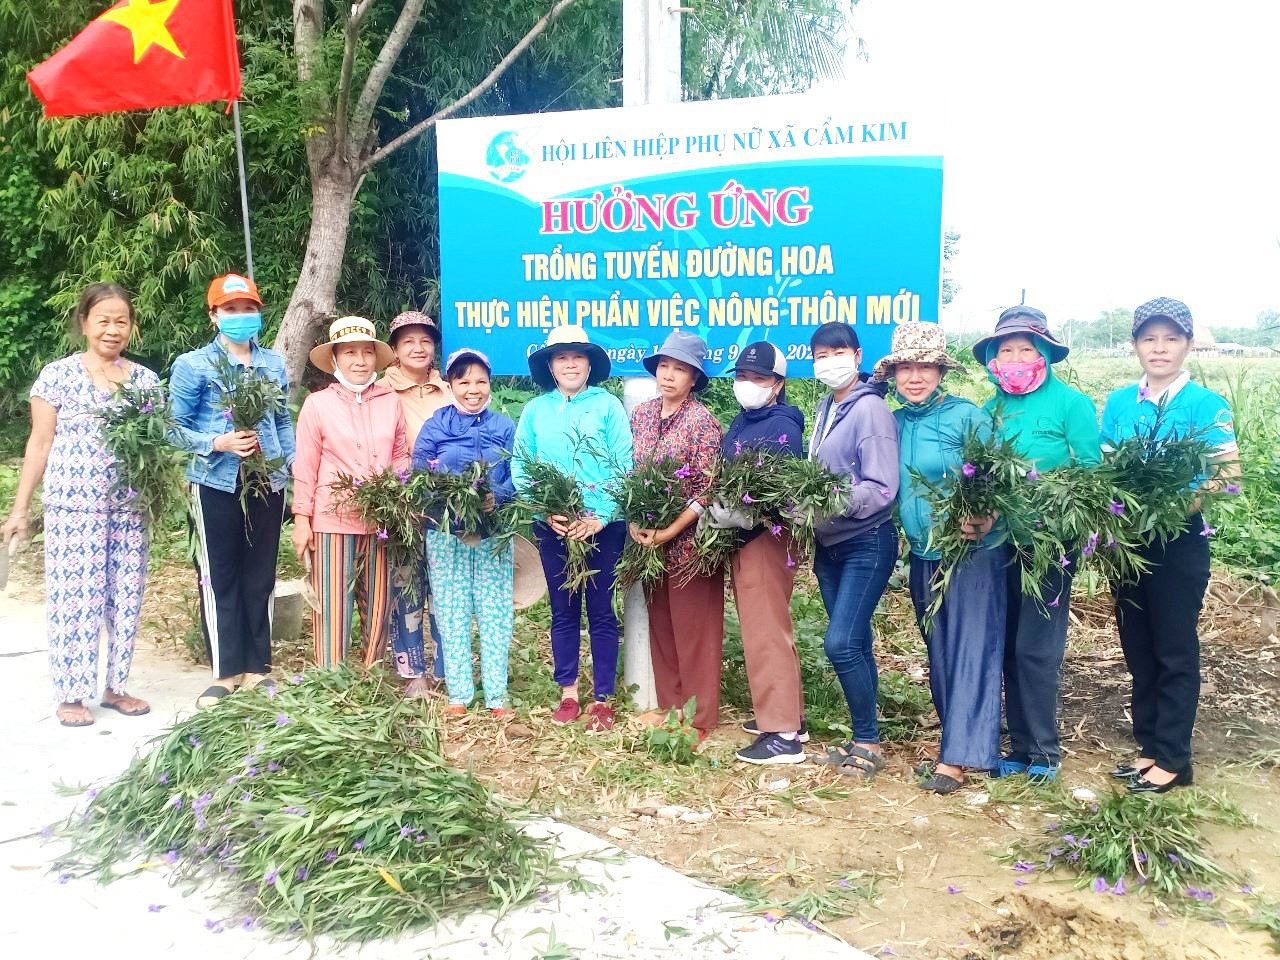 Cán bộ, hội viên phụ nữ xã Cẩm Kim ra quân trồng đường hoa góp phần xây dựng cảnh quan nông thôn mới.